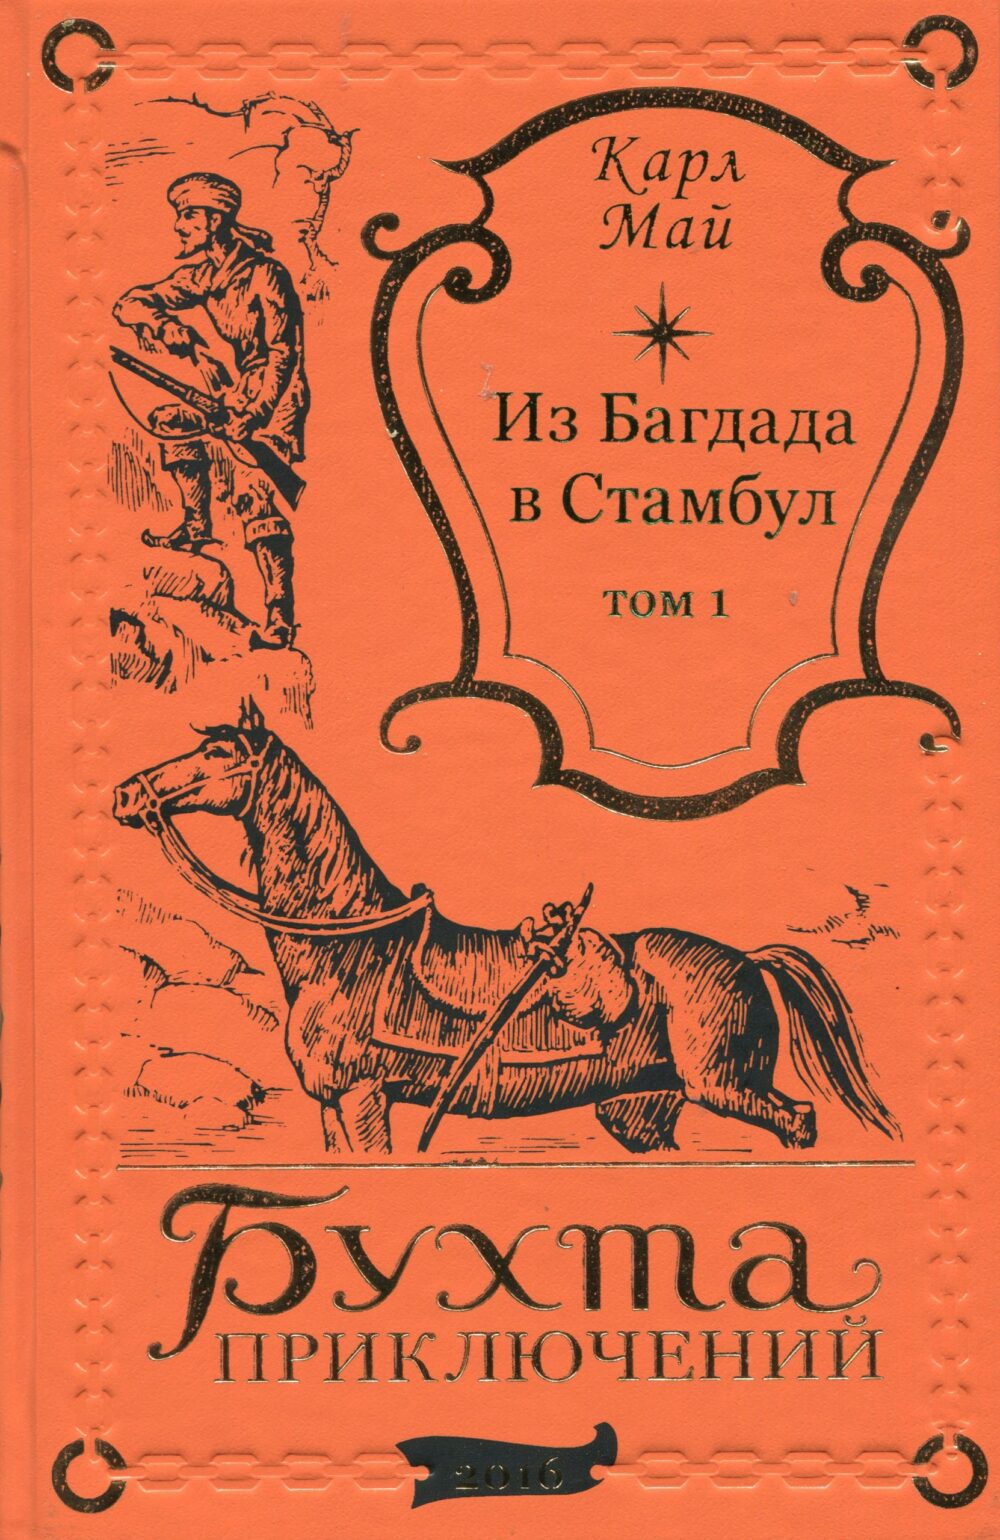 Карл Май "Из БАГДАДА В СТАМБУЛ" т.1 и т.2 (комплект)-1324